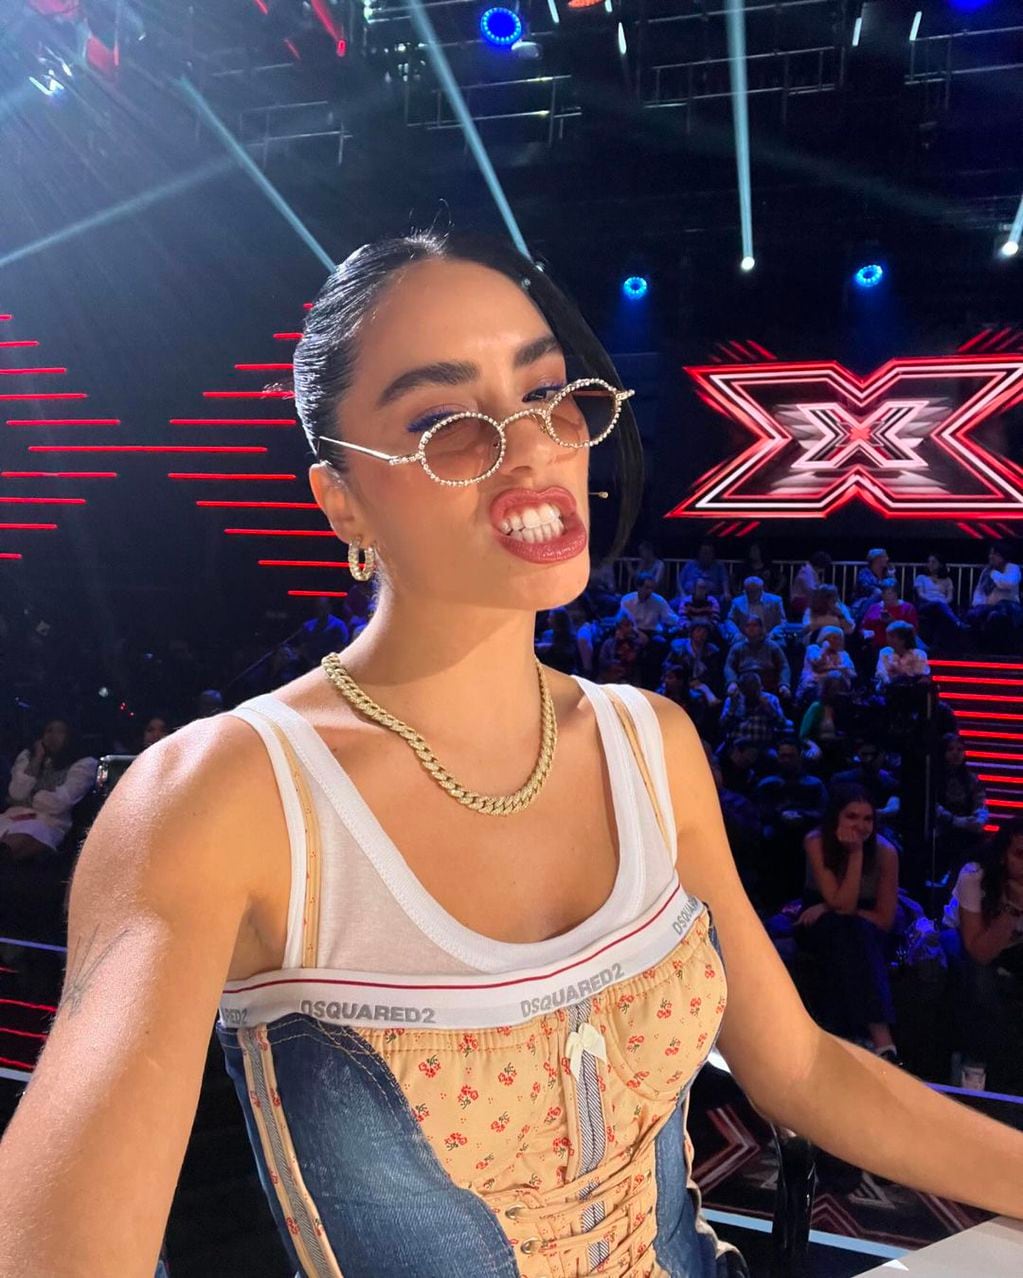 Corset y denim: Lali brilló con un look noventero en Factor X de España